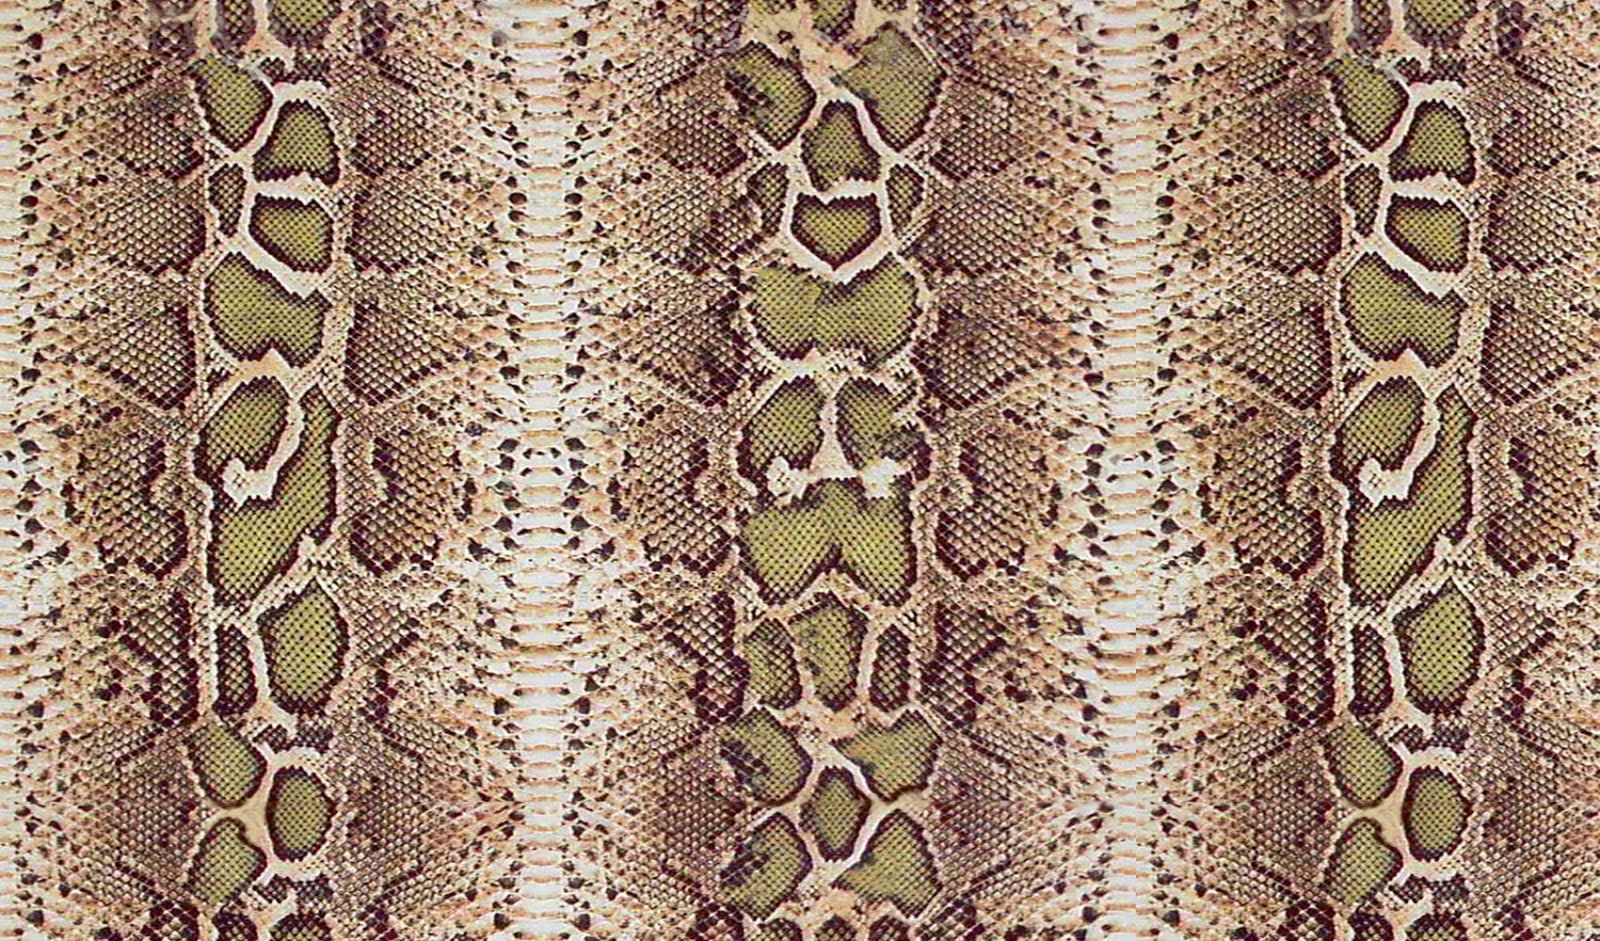 Snakeskin Wallpaper